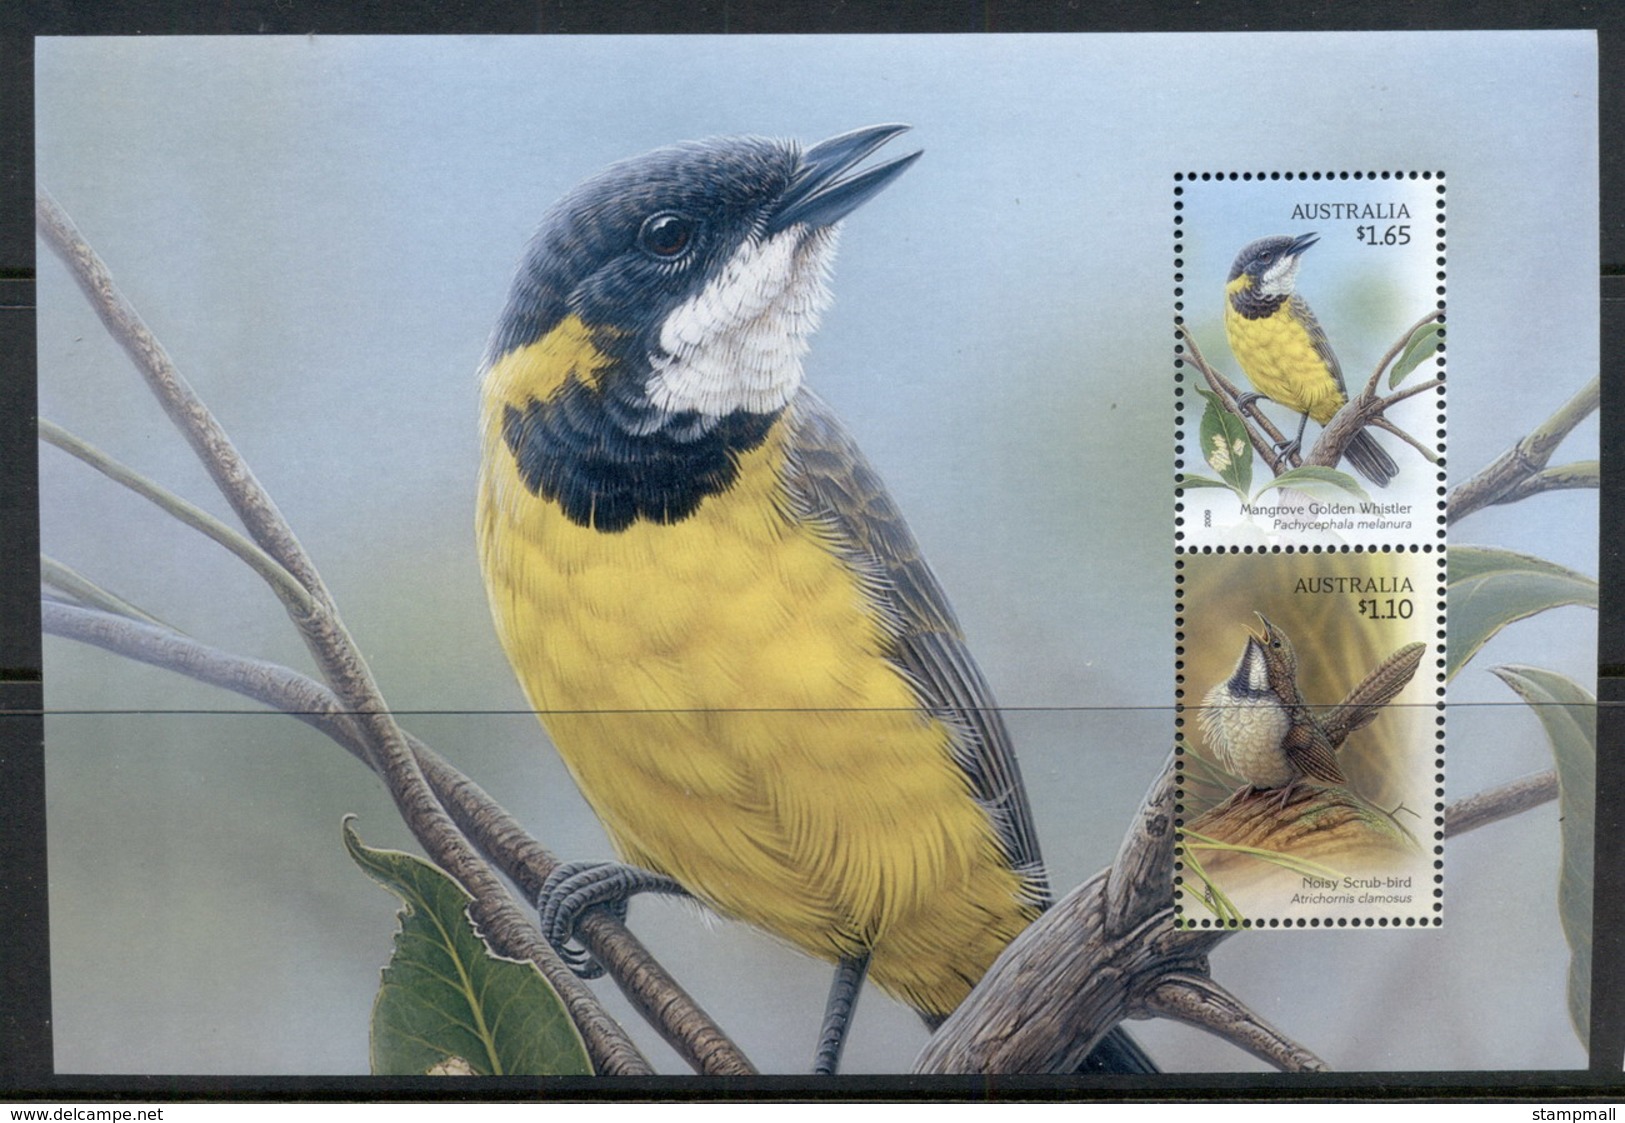 Australia 2009 Songbirds, Noisy Scrub-bird & Mangrove Golden Whistler Prestige Booklet Pane MUH - Mint Stamps